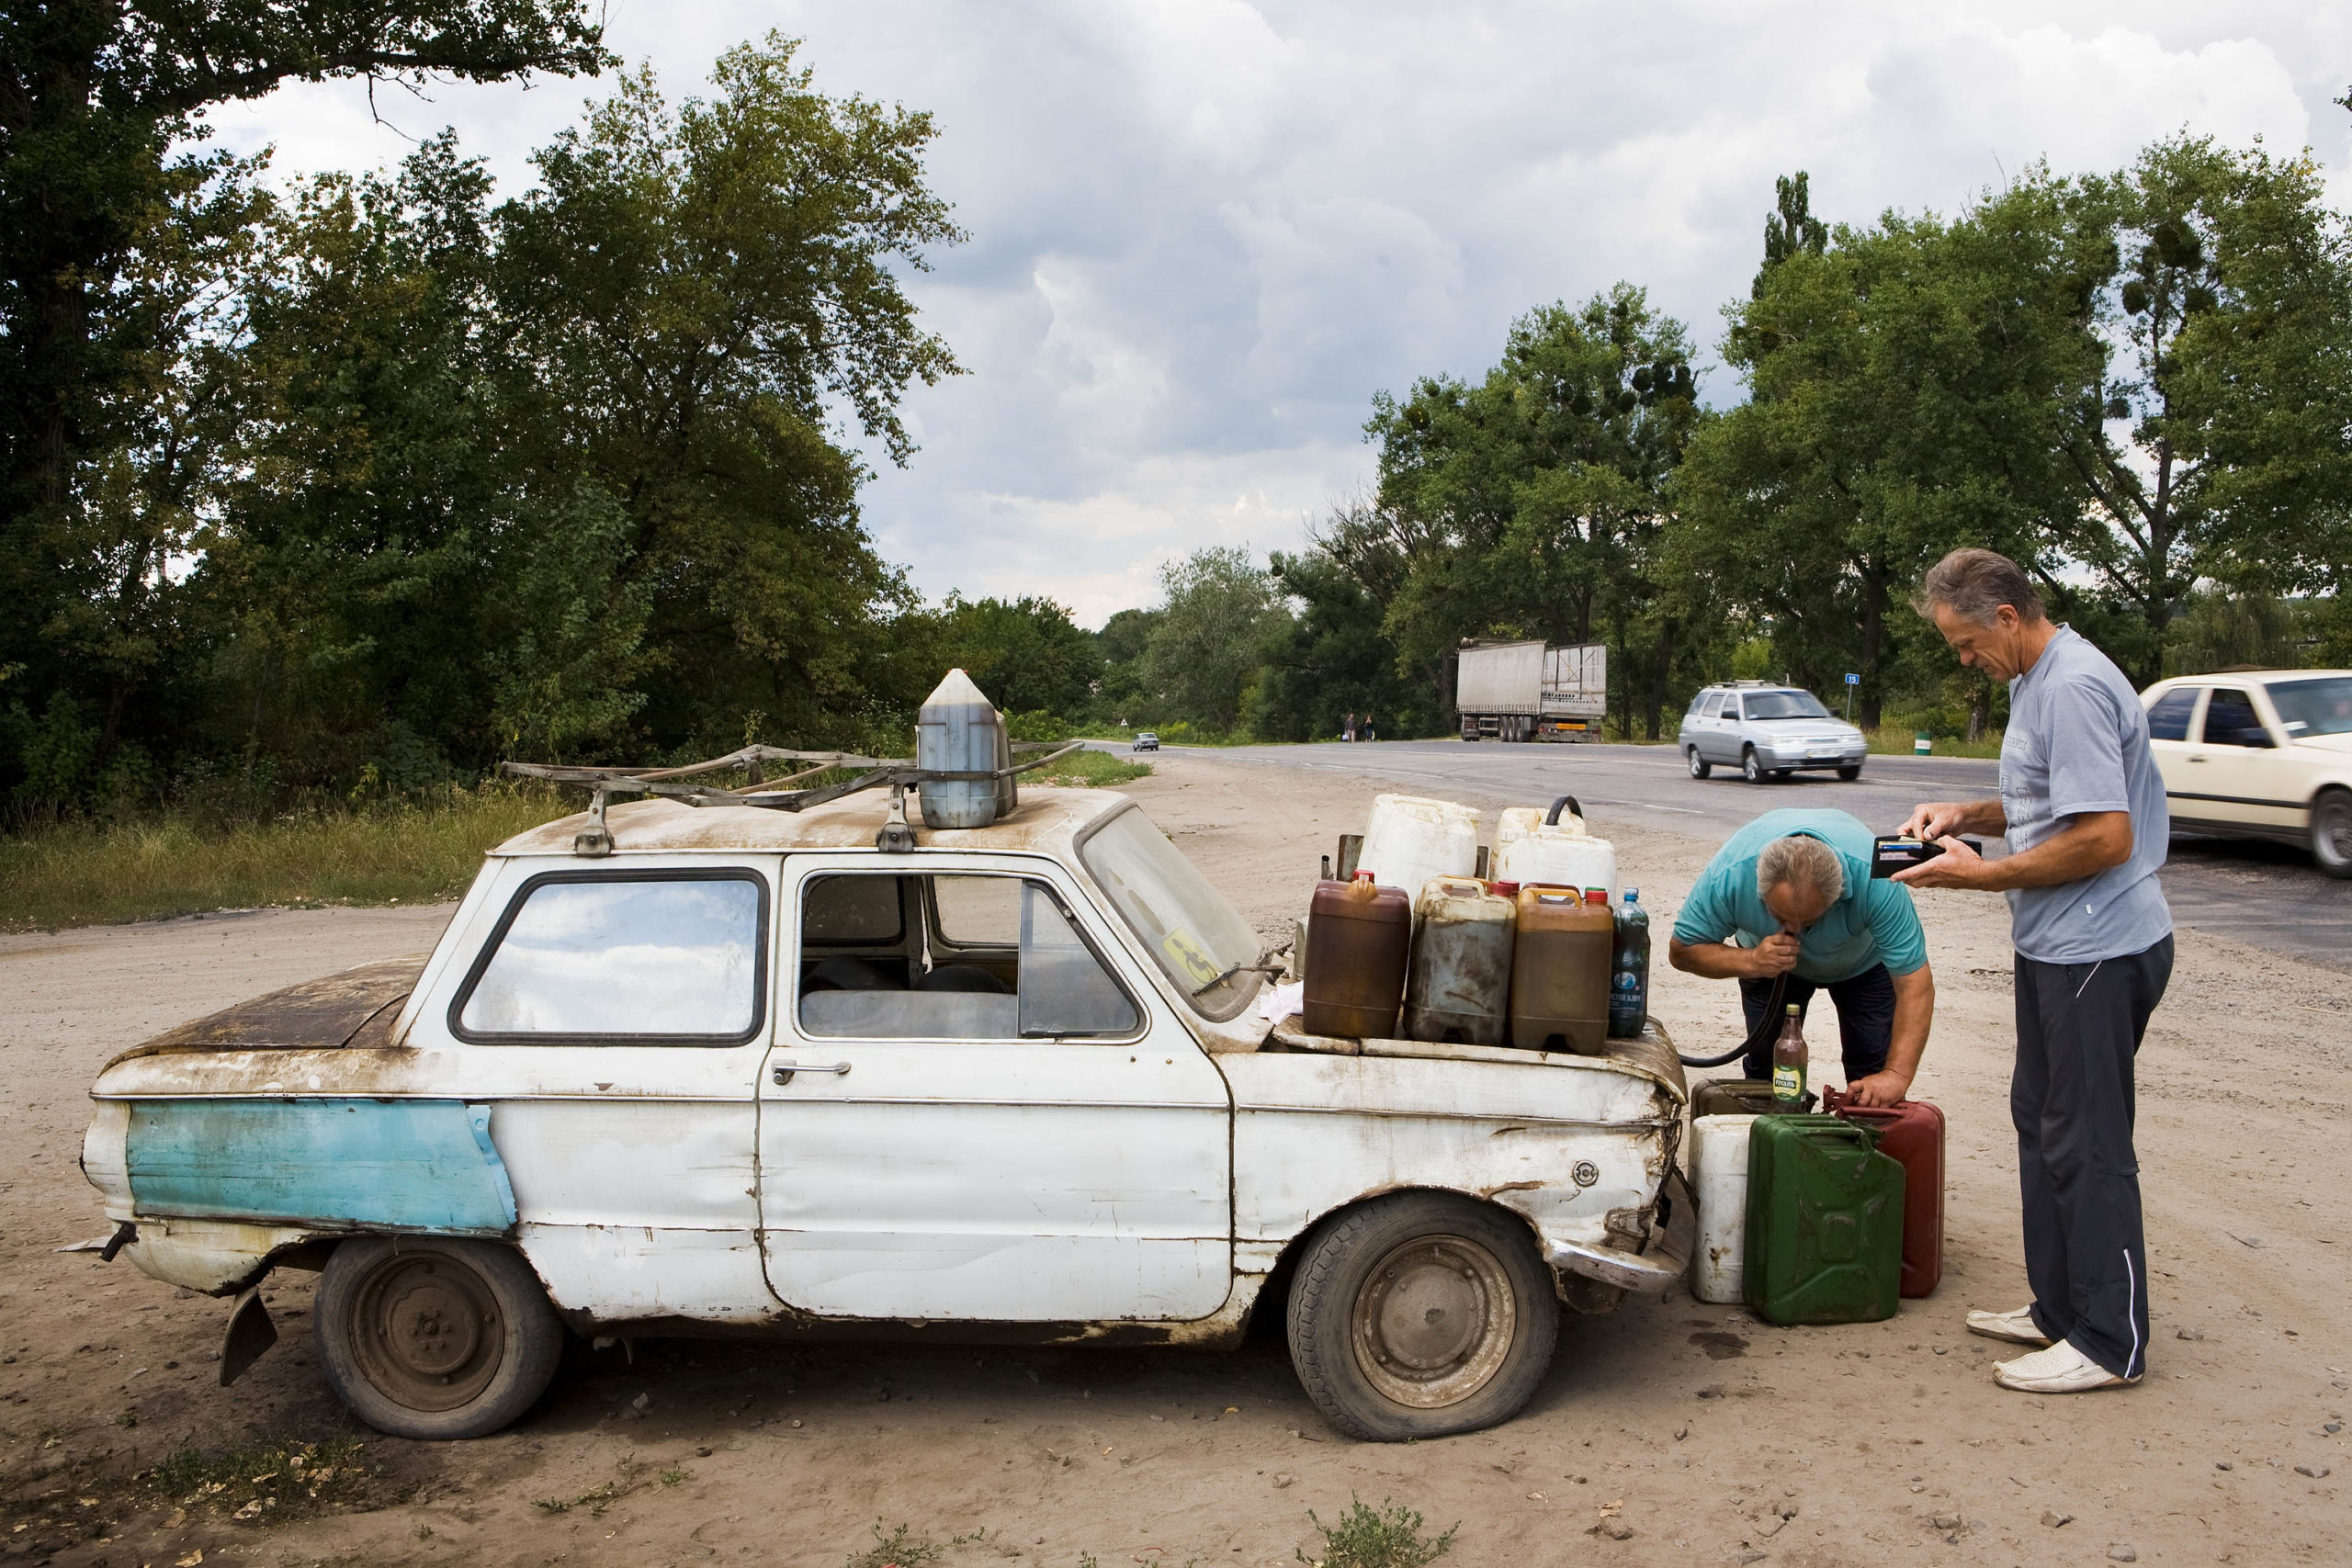 Zaporozhets; Leonti Michailovitsj sells stolen diesel from his car. Karatsjivka, Ukraine, 2008